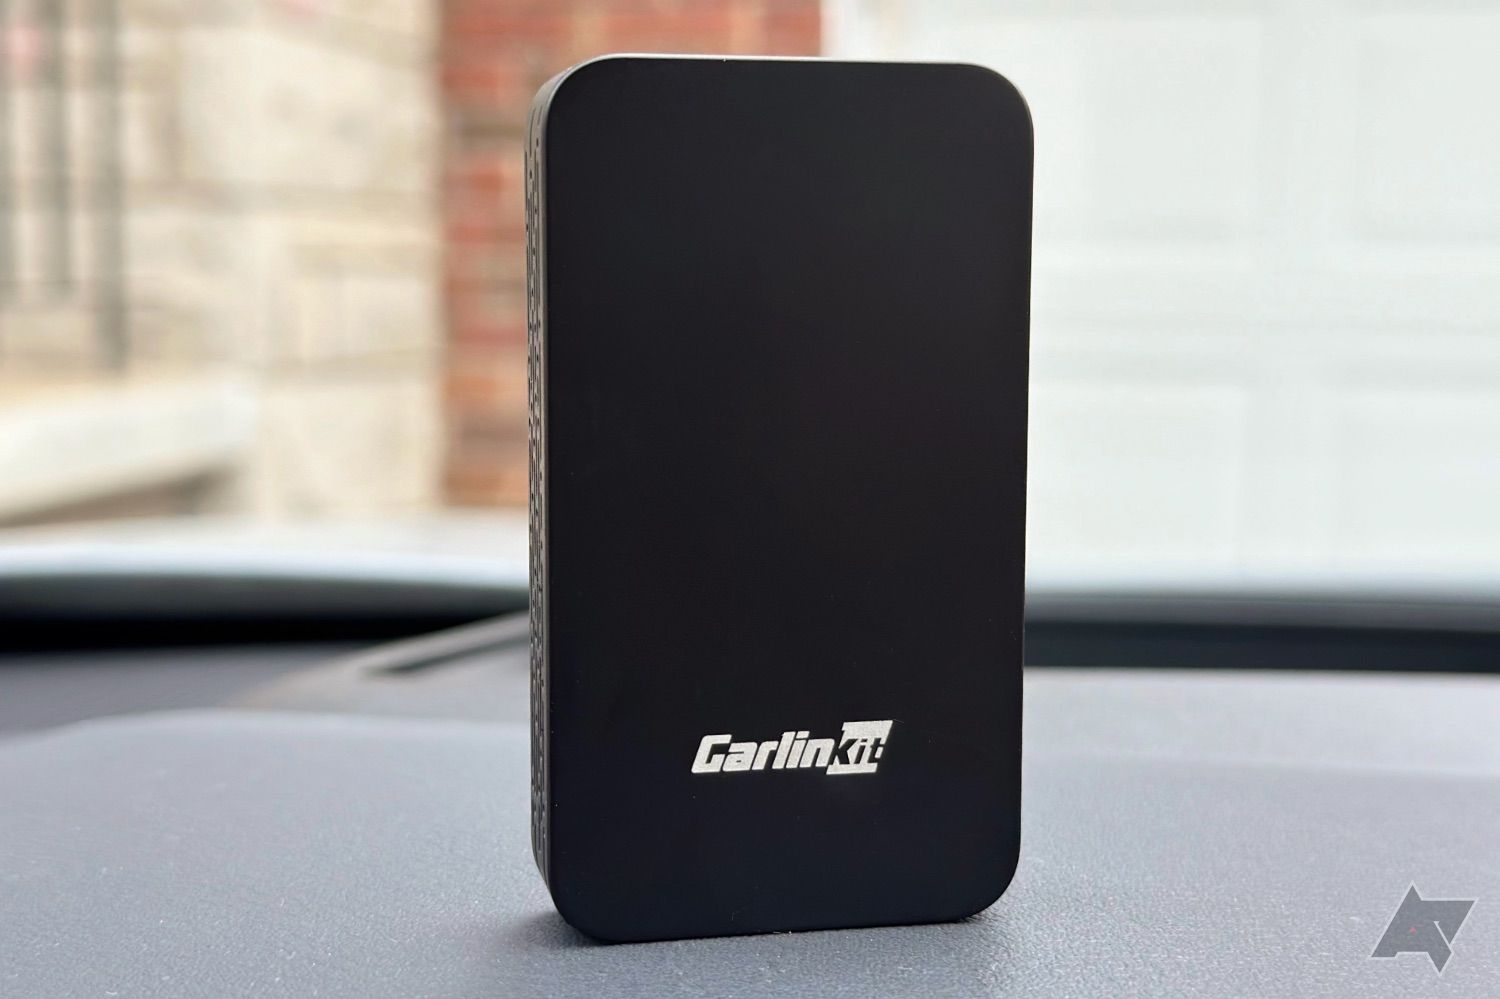 Carlinkit 5.0 adapter on car dashboard.